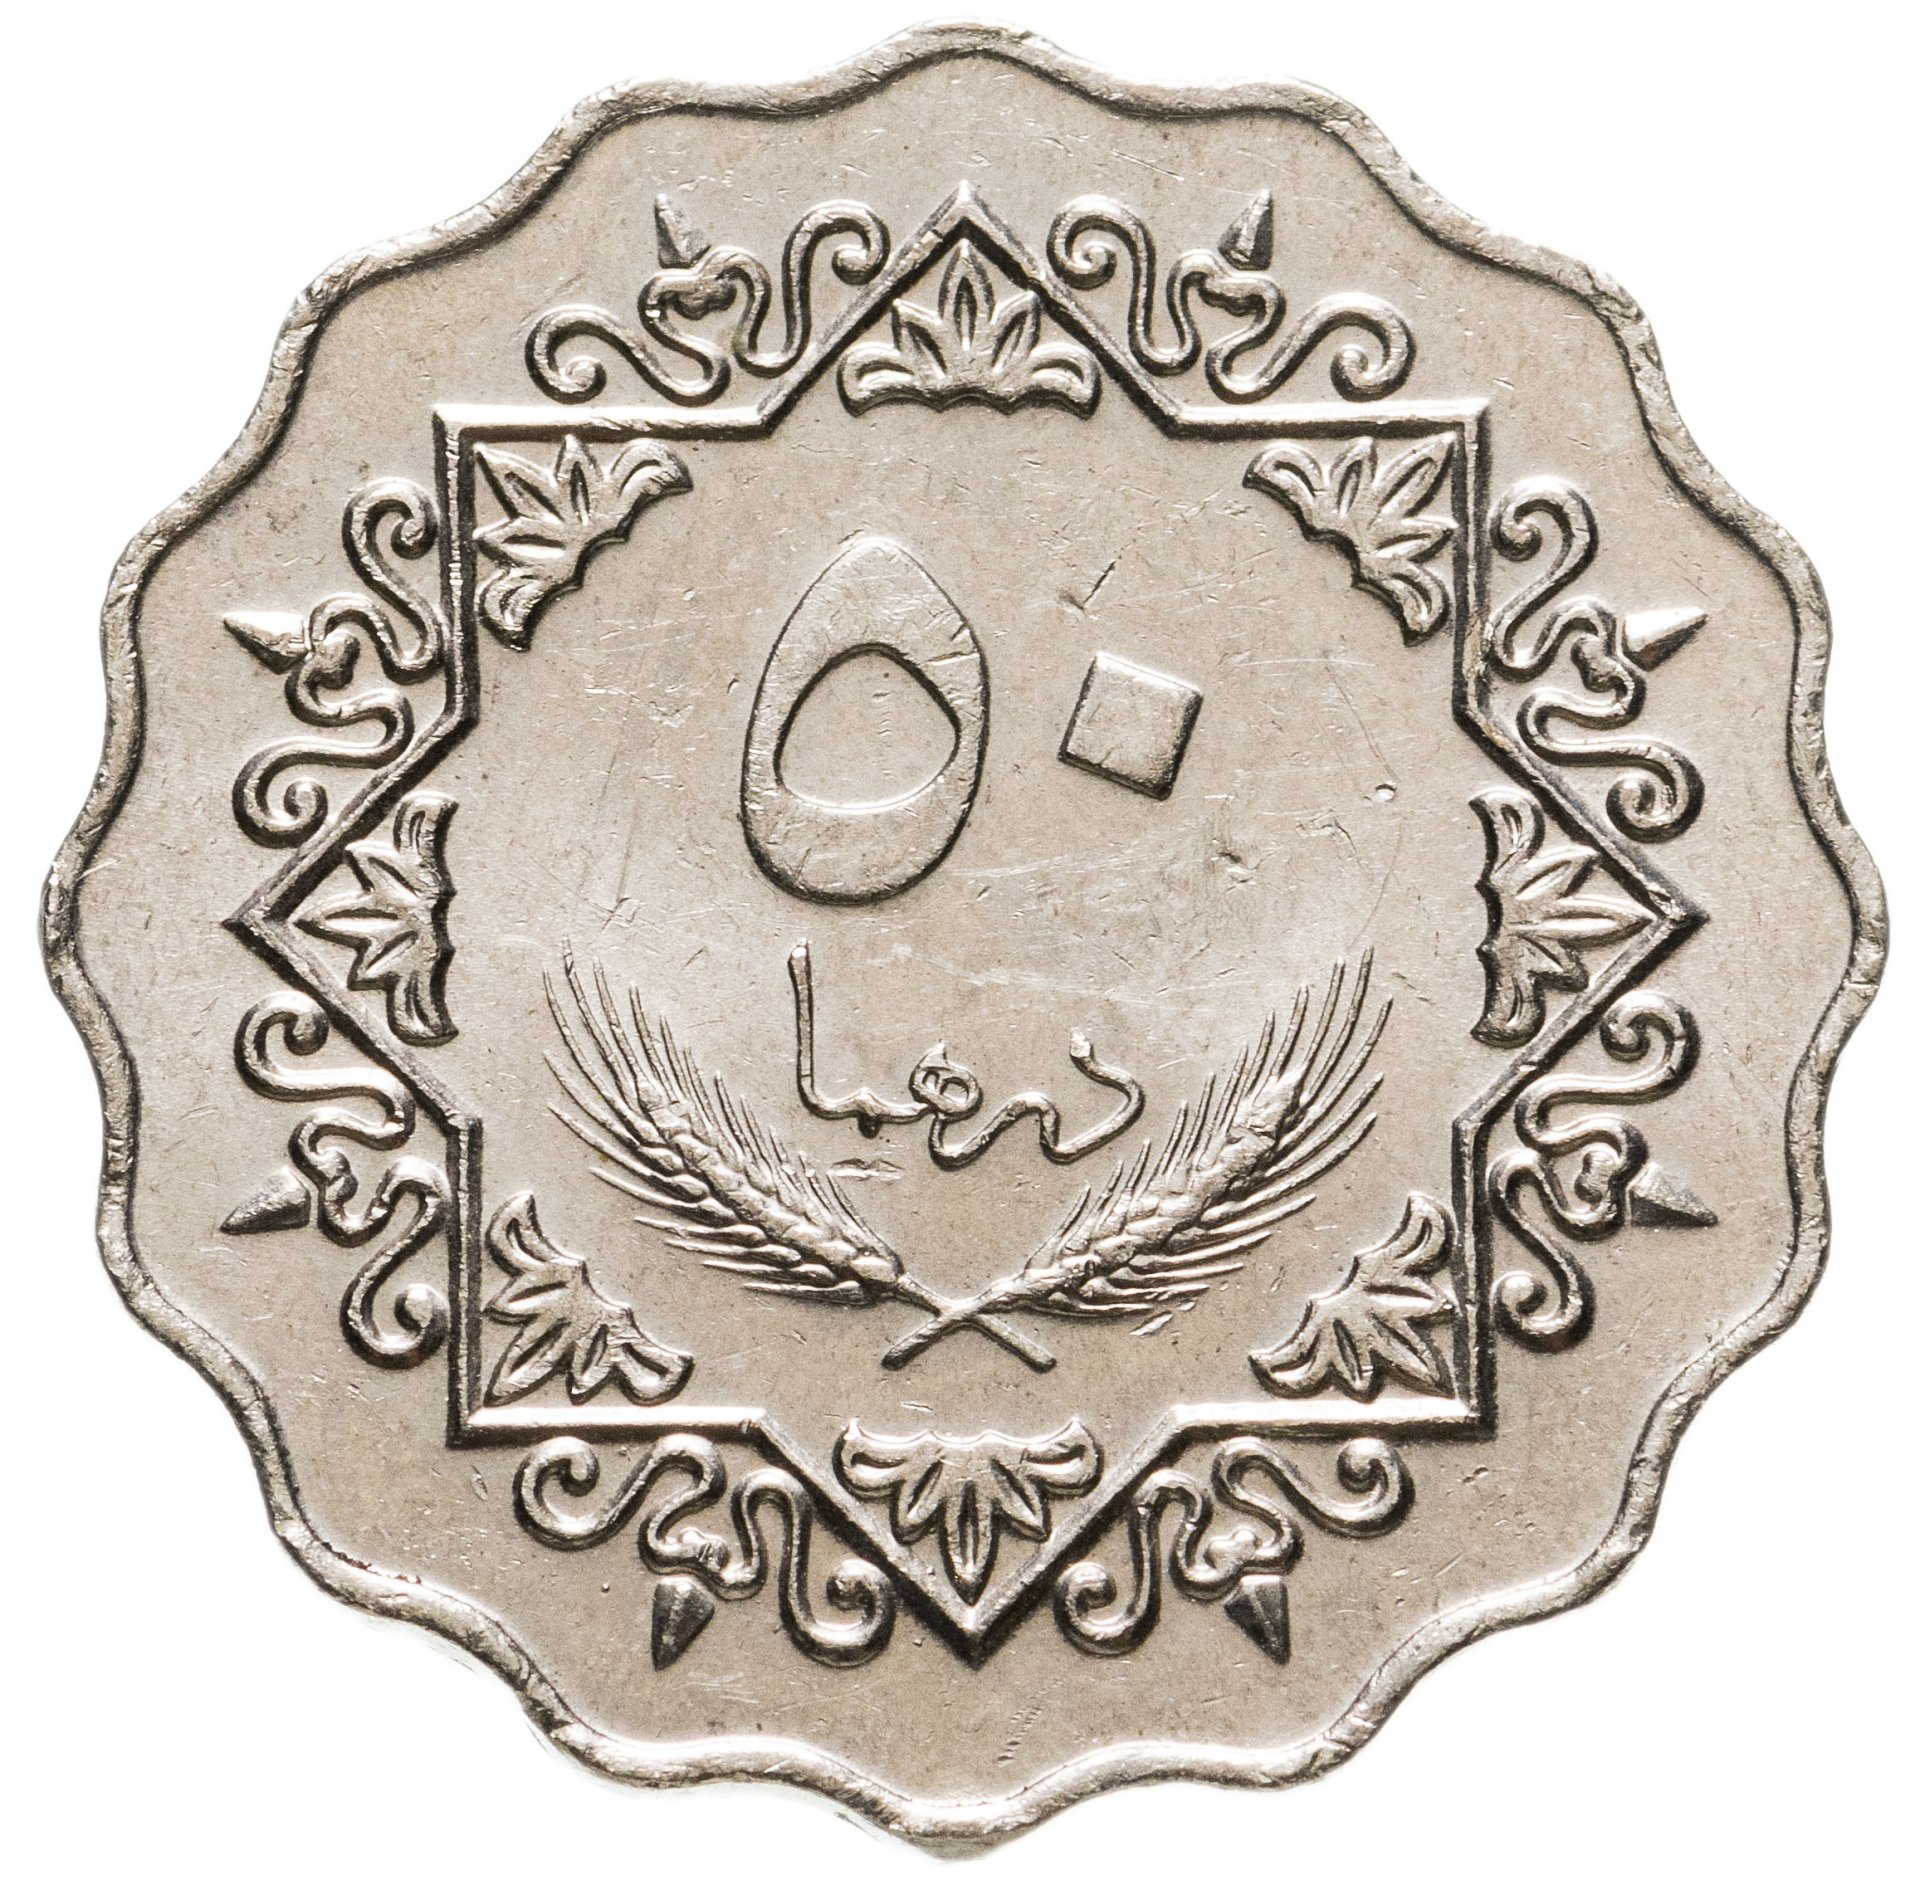 4500 дирхам. Ливия 50 дирхамов 1979. Монета с арабской вязью 50. Монеты ливийской Джамахирии. Старинные арабские монеты.